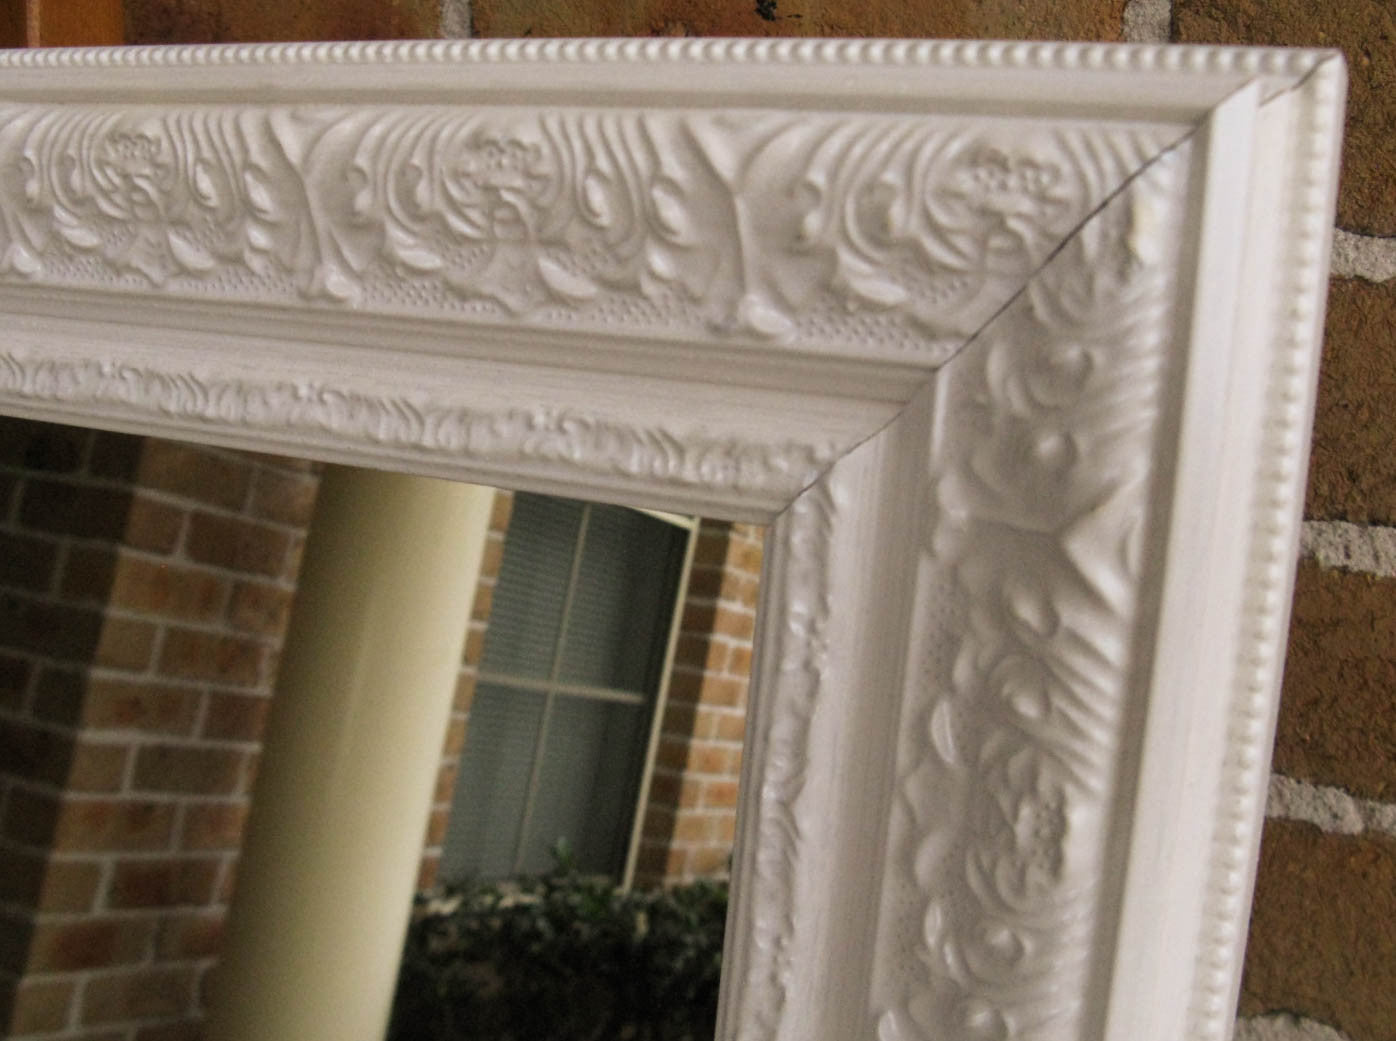 Viera White Ornate Decorative Large Wall Mirror Image Enhancement Image Enhancement Mirrors